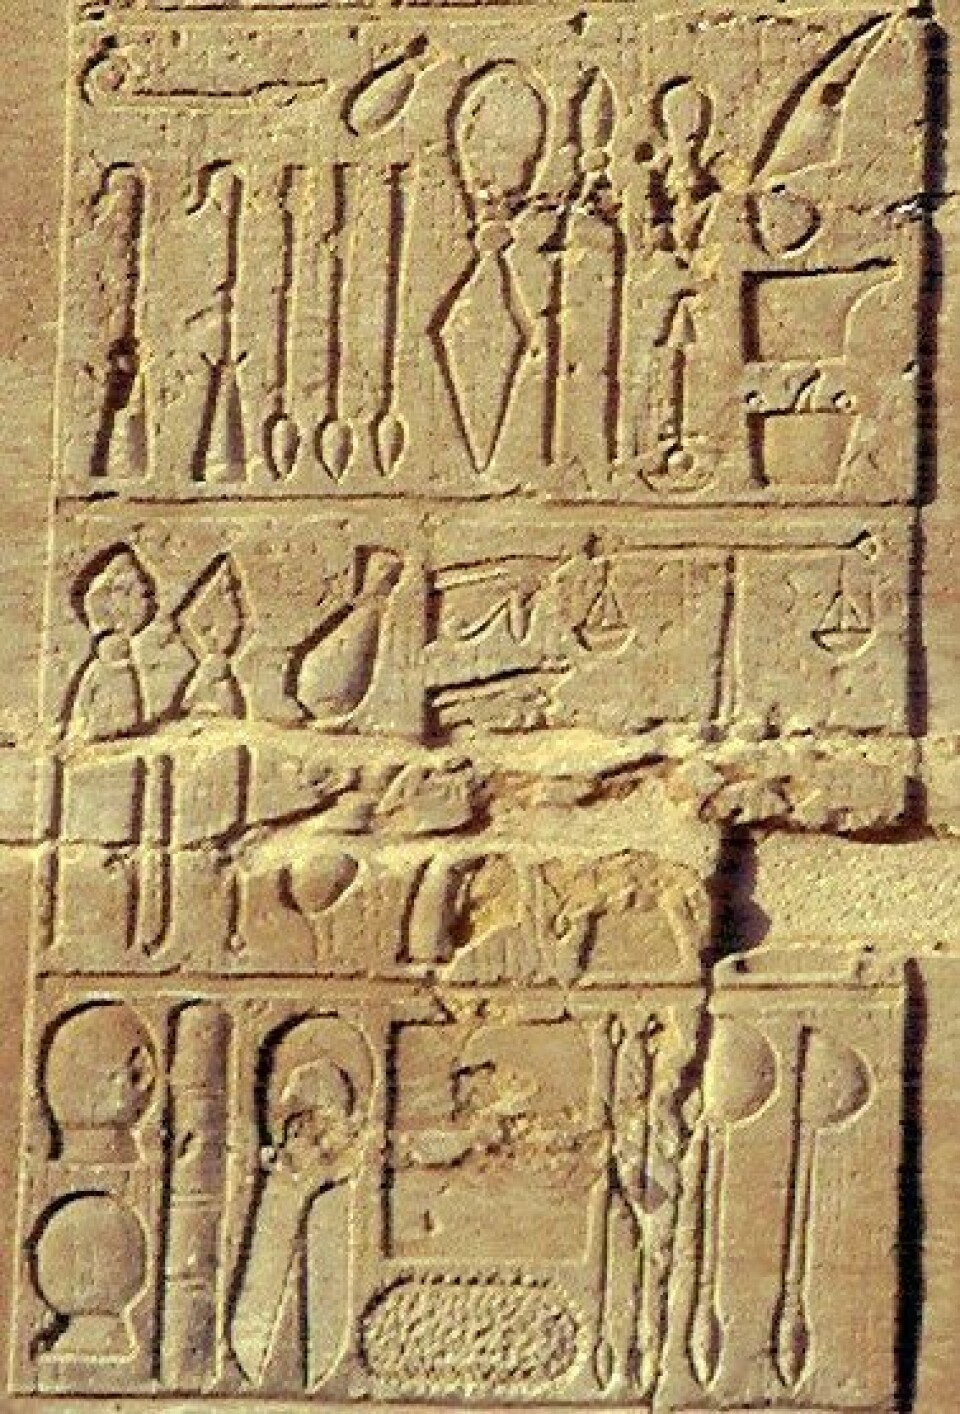 Også de gamle egypterne drev med medisin. Bildene i stein viser medisinske redskaper. (Foto: Jeff Dahl/Wikimedia Commons)